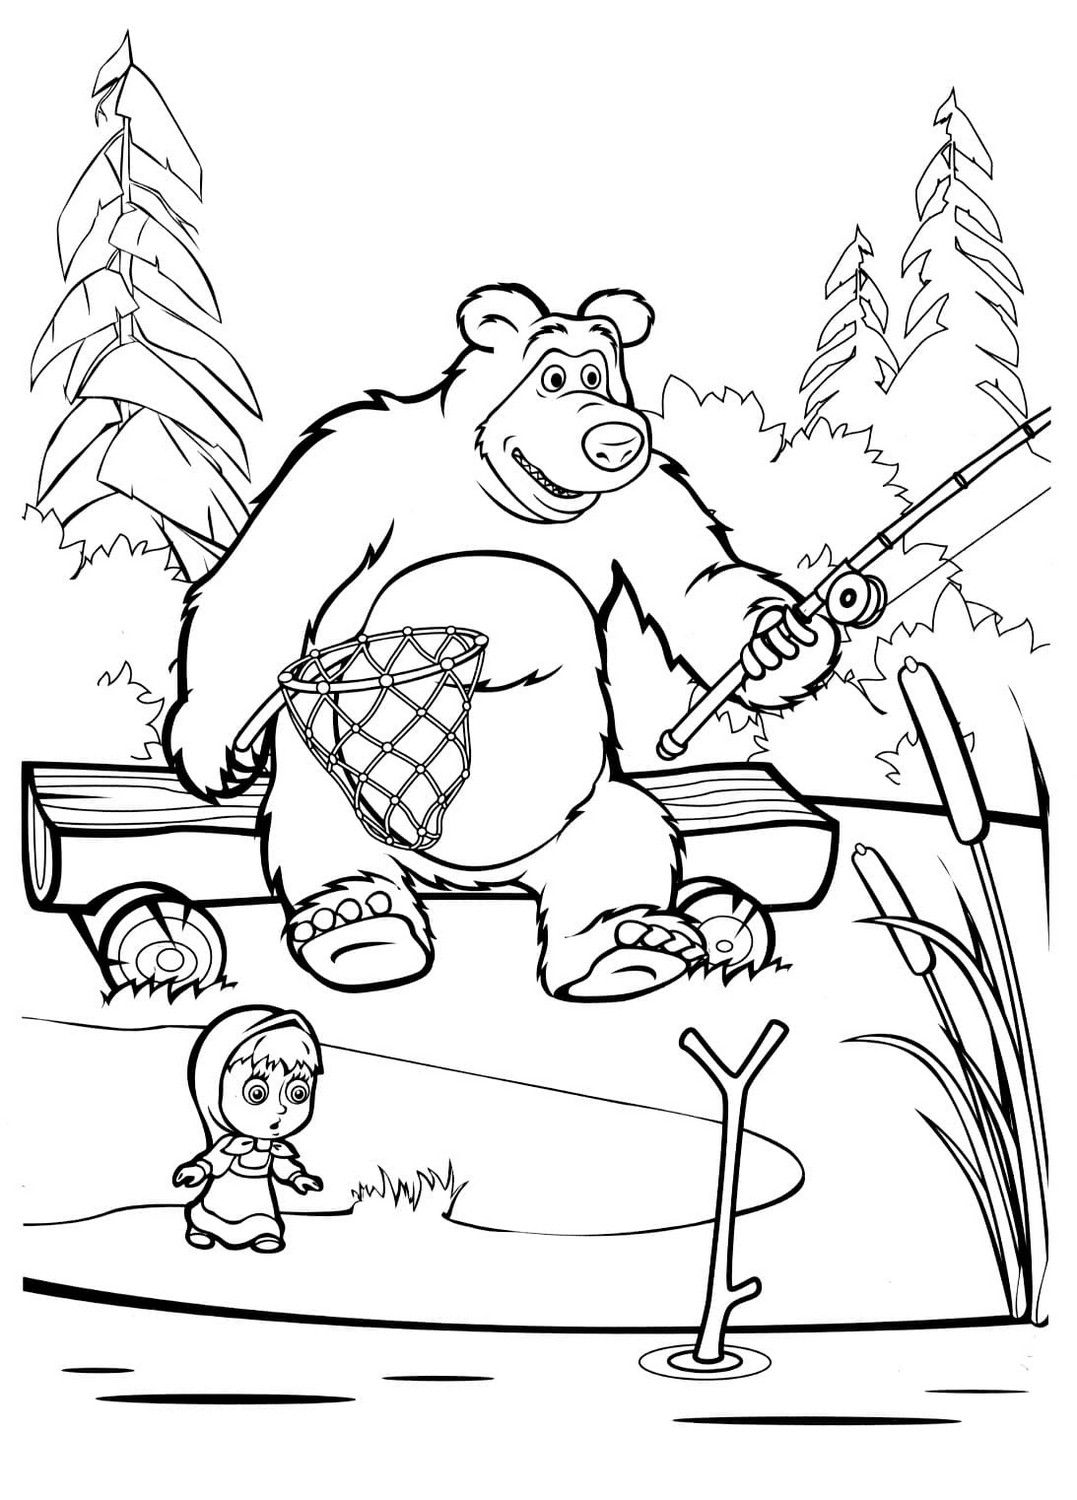 Dibujo 85 de Masha y el oso para imprimir y colorear